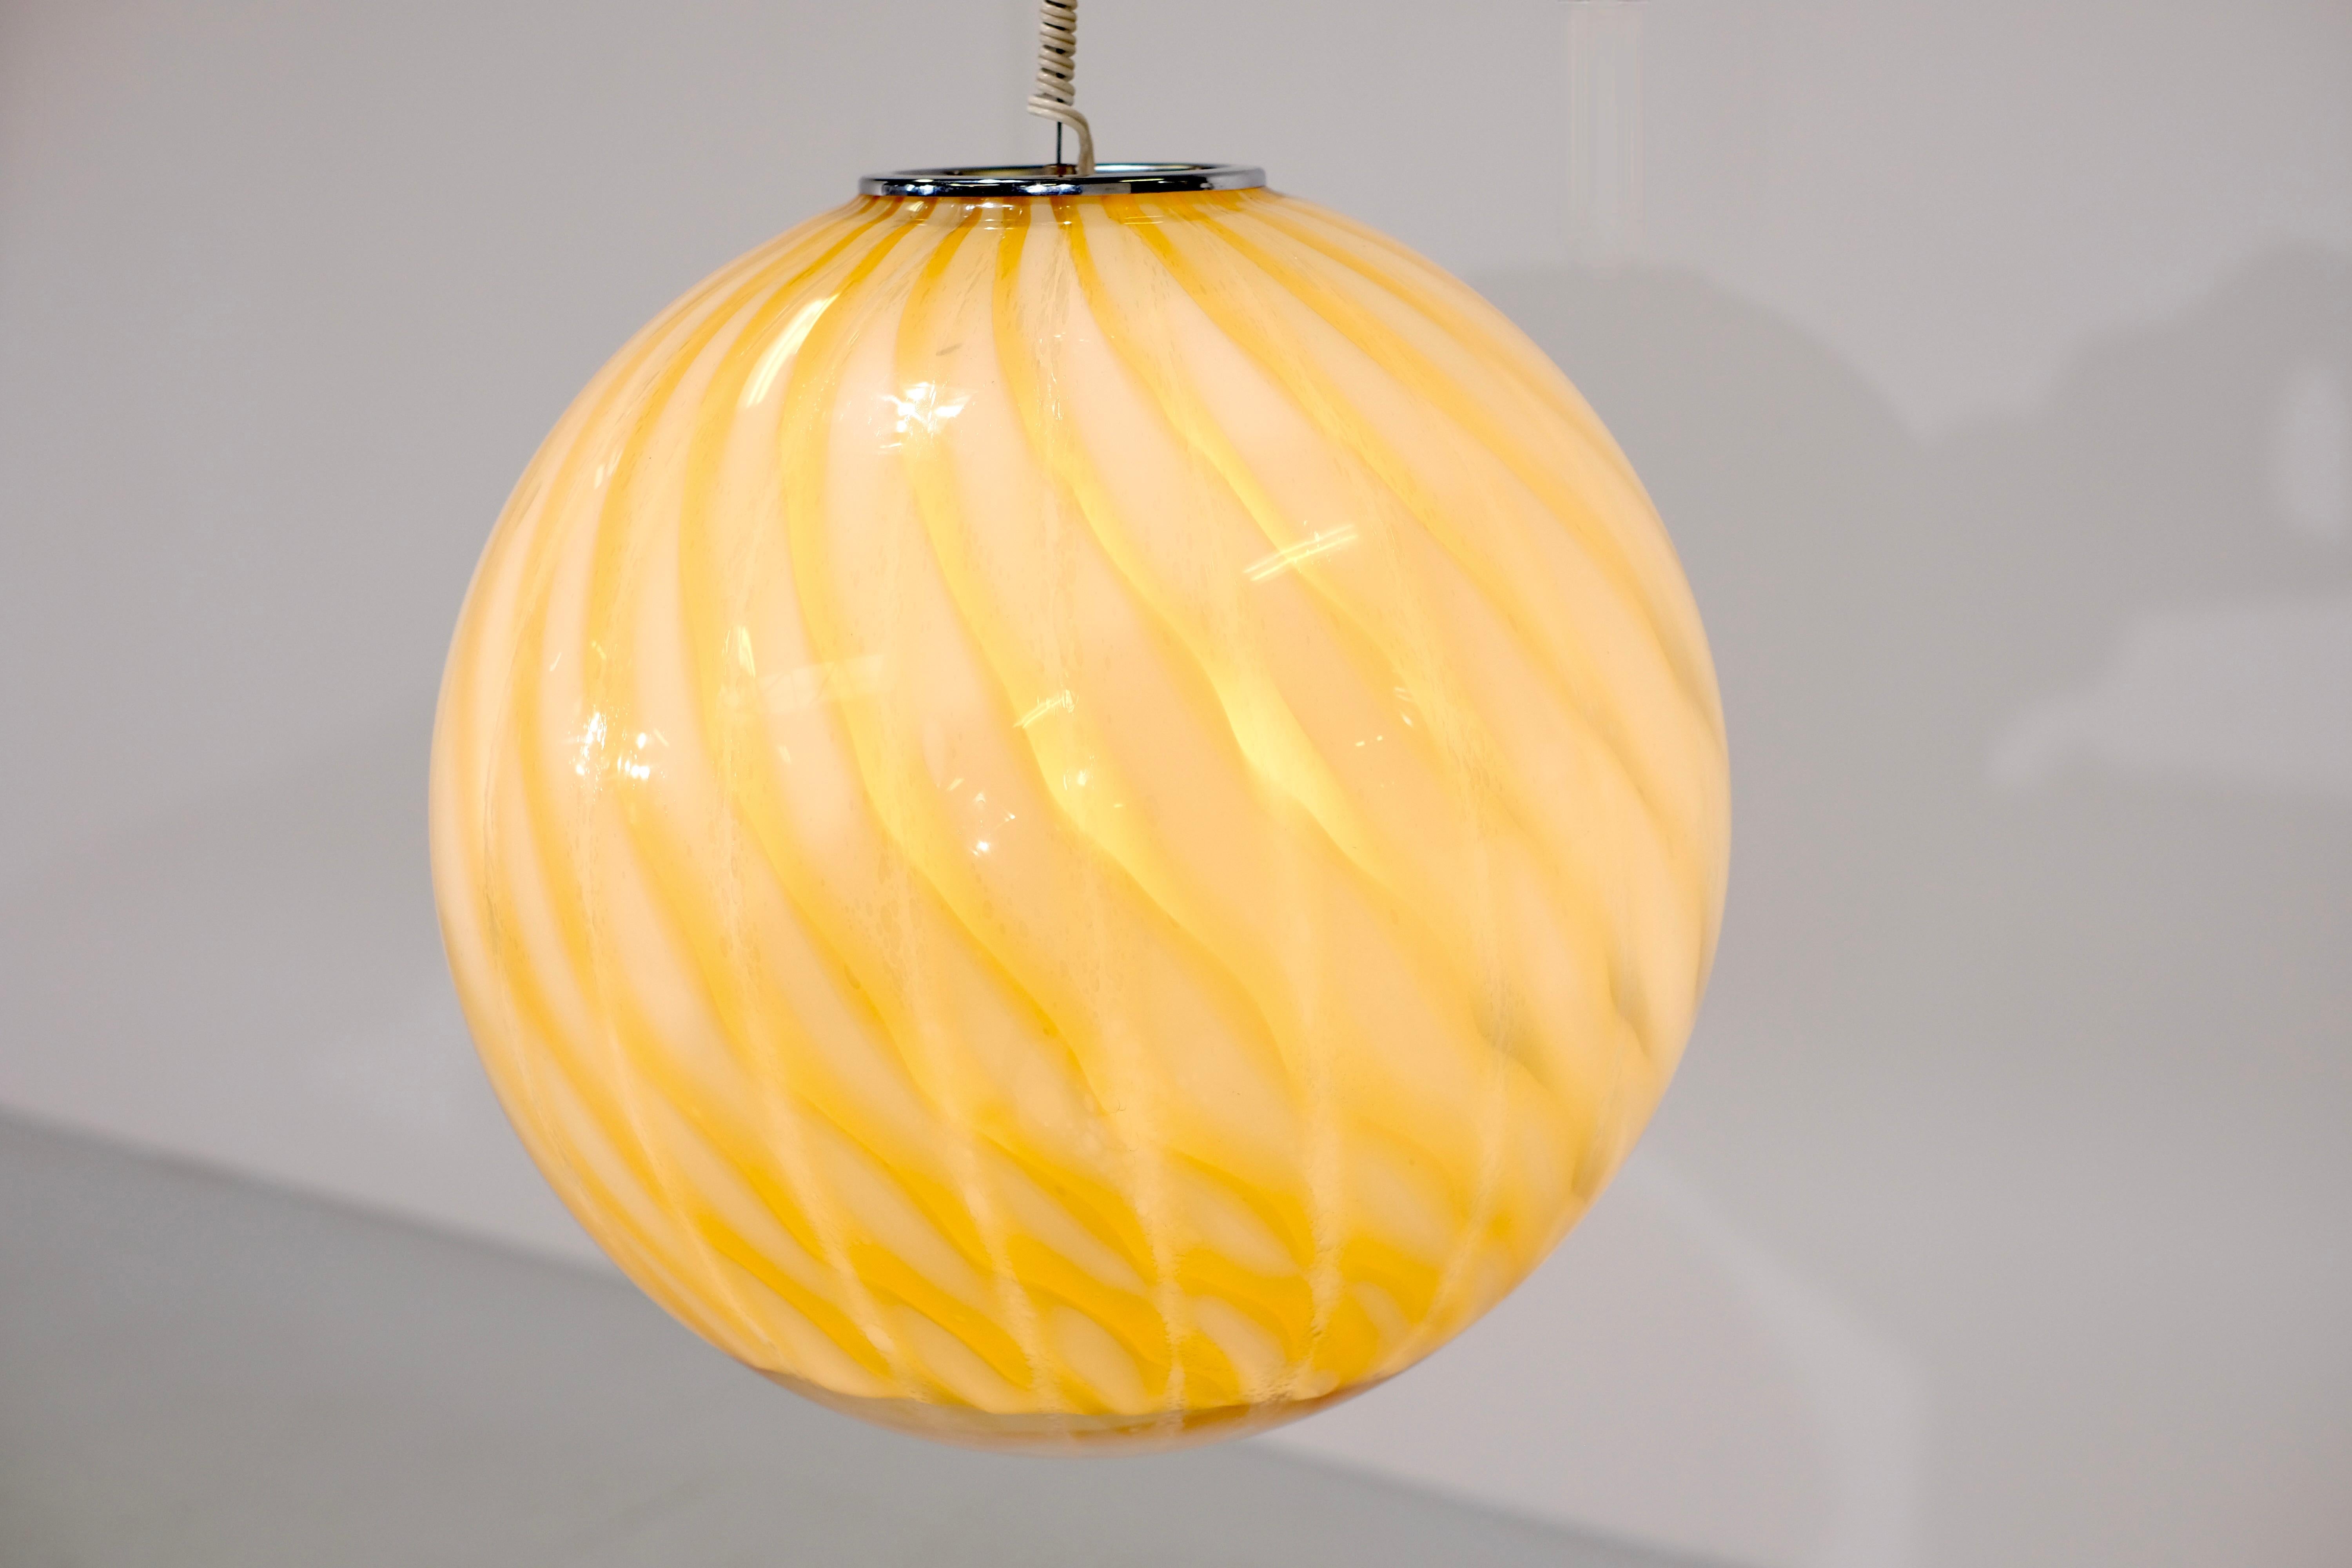 Étonnante lampe suspendue sphérique en verre de Murano attribuée à Venini dans les années 1960.

Cette lampe suspendue est en très bon état vintage et ne présente aucun dommage.
Le dégradé de motifs offre une lumière magnifique et originale.
Les